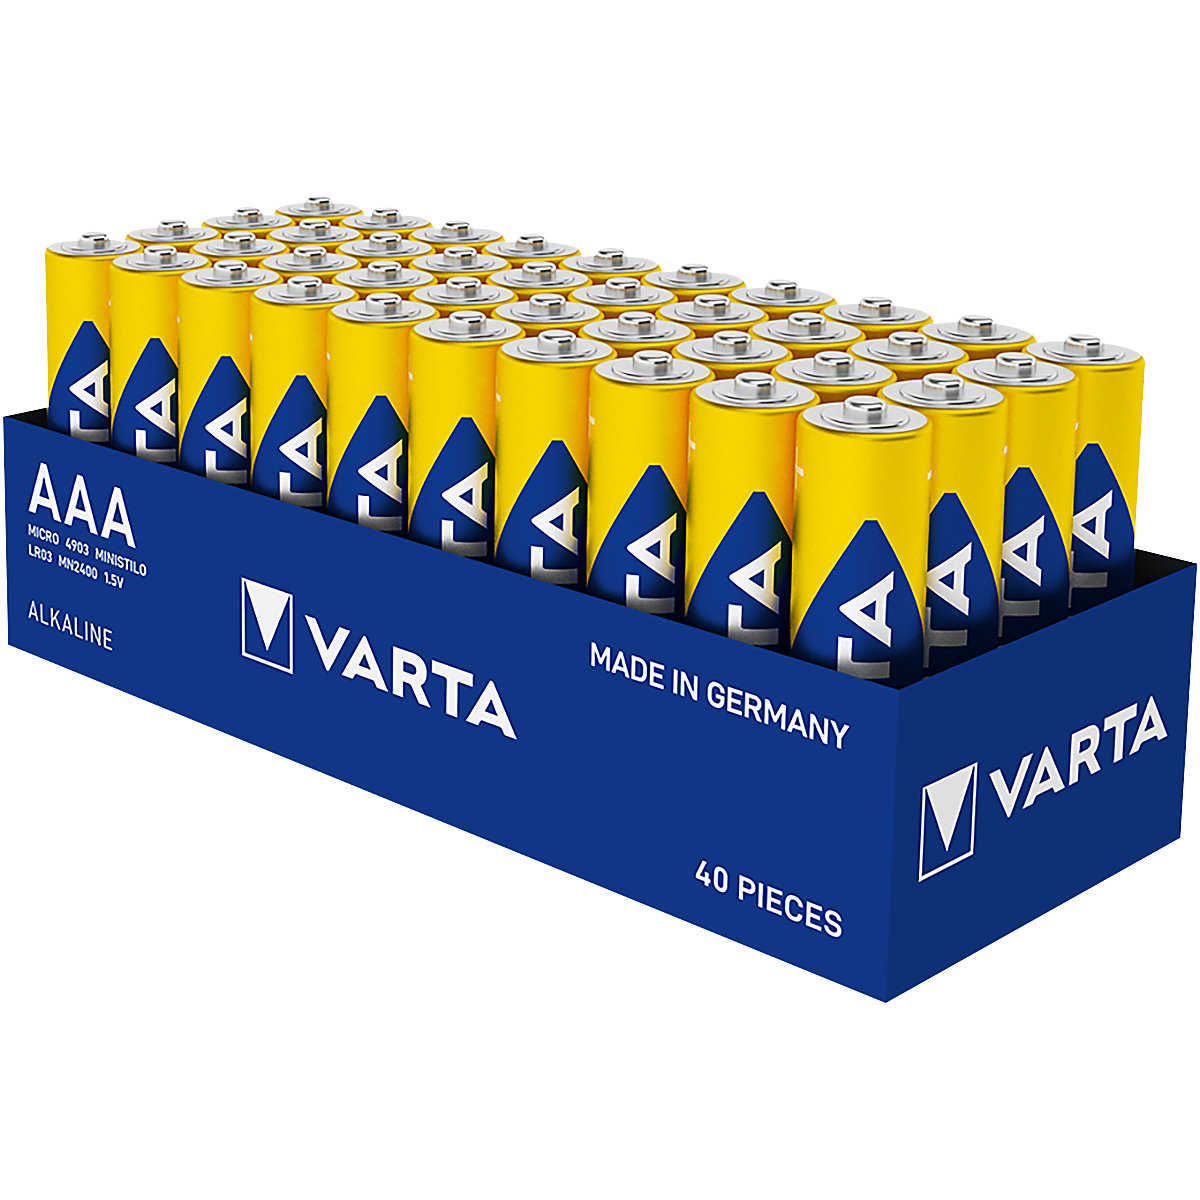 Batéria LONGLIFE Power – VARTA, AAA, OJ 40 ks-2